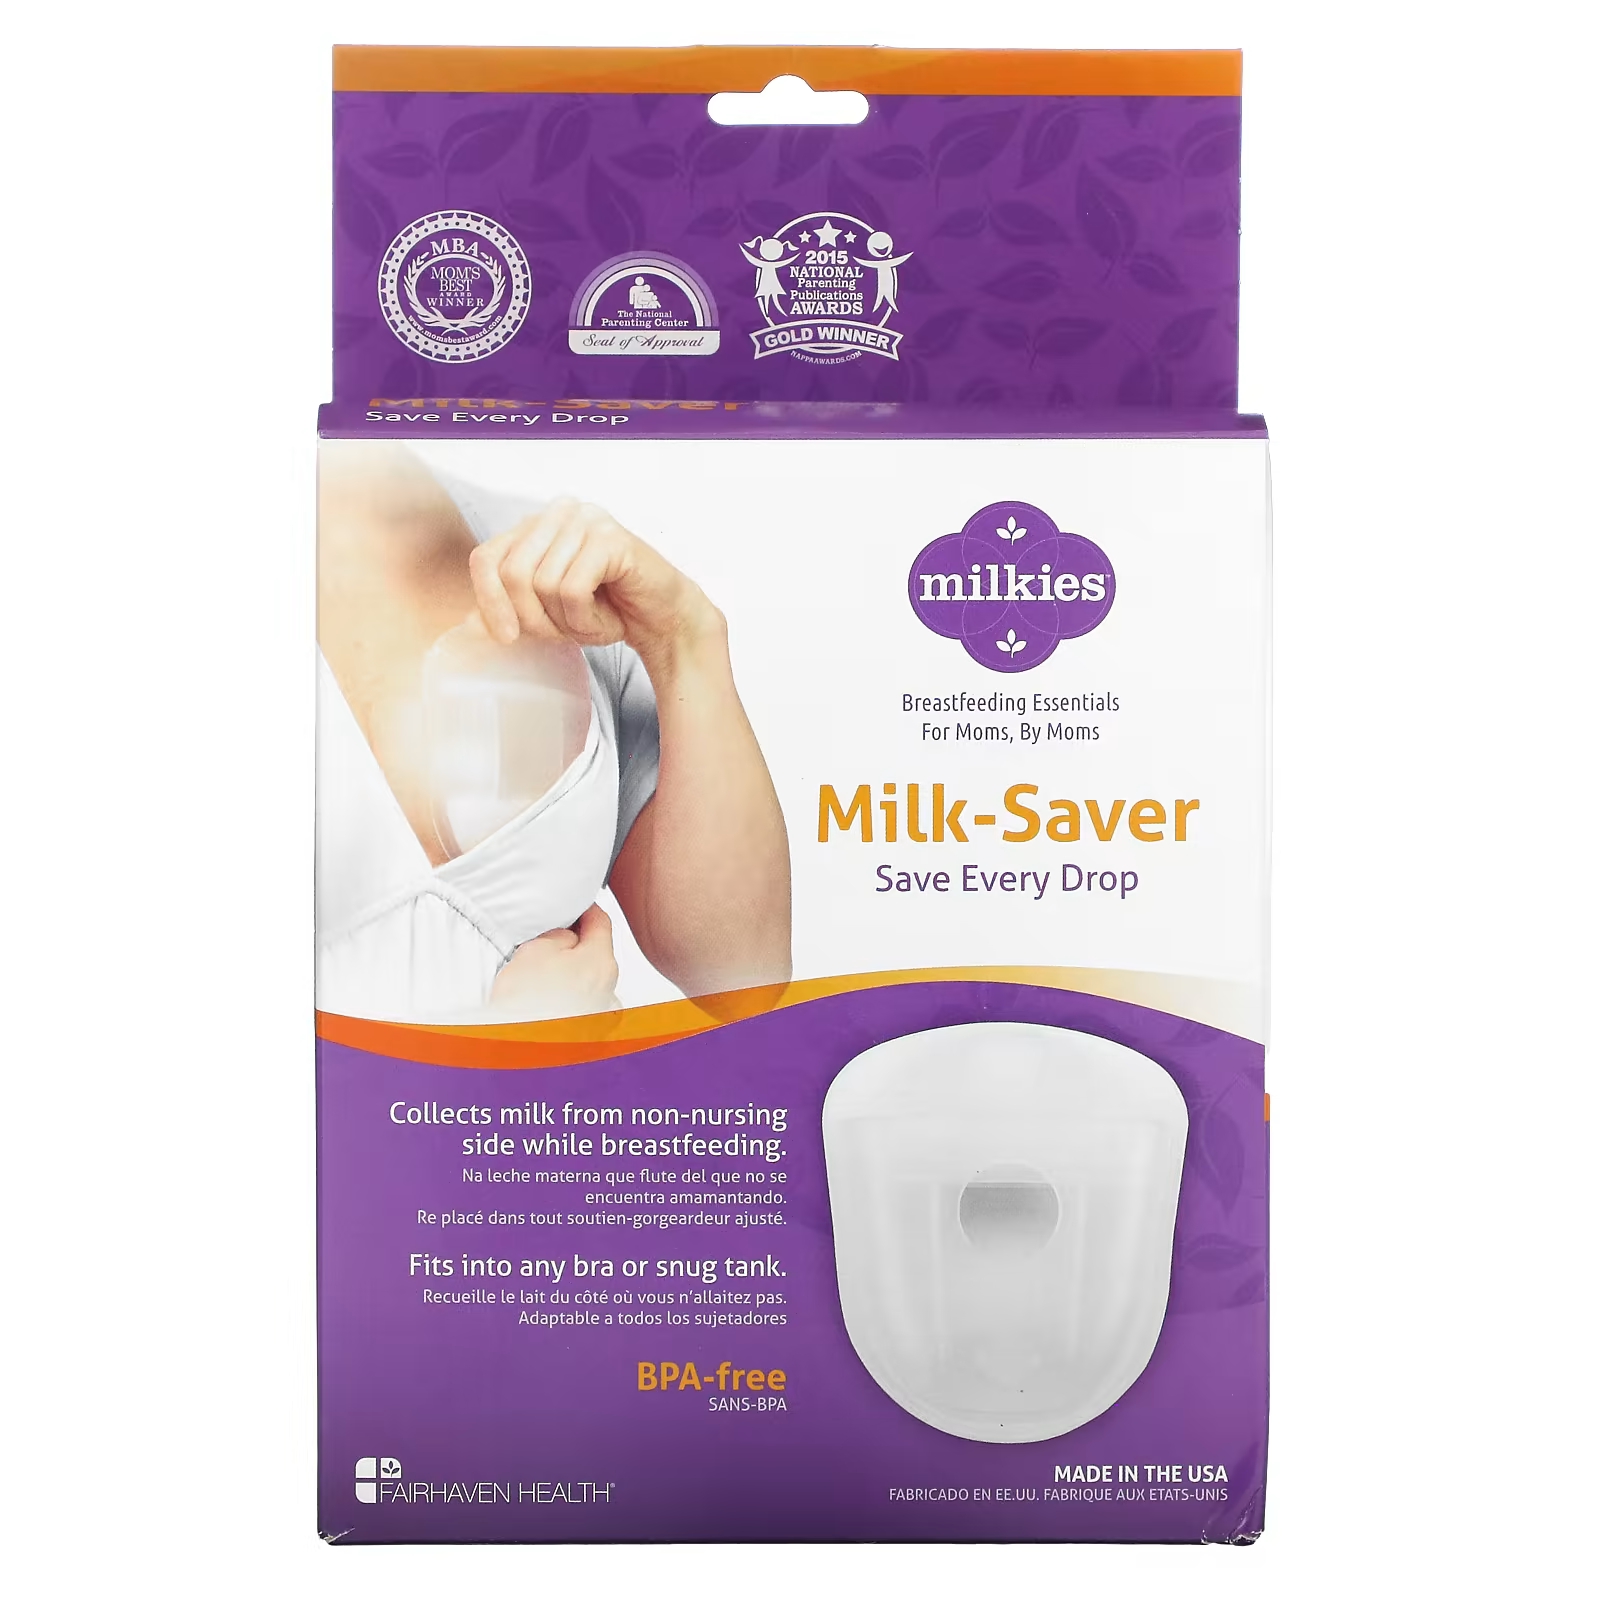 Мультивитамины Fairhaven Health Milkies для экономии молока fairhaven health milkies лотки для молока 2 лотка многоразового использования